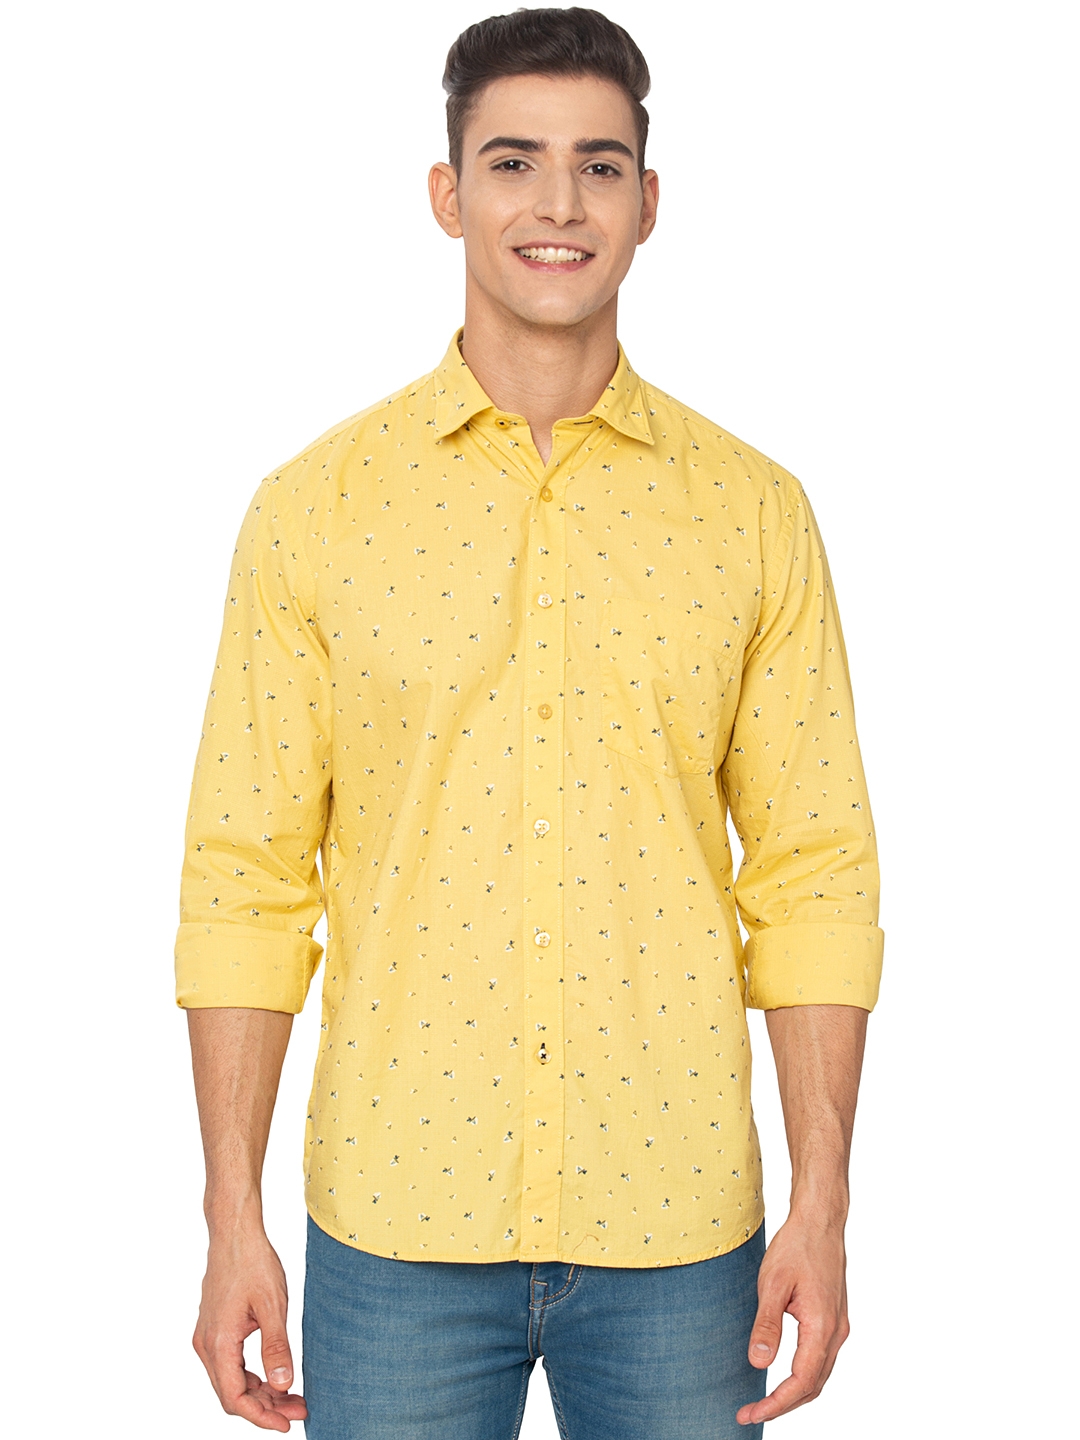 Greenfibre | Lemon Yellow Printed Slim Fit Casual Shirt | Greenfibre